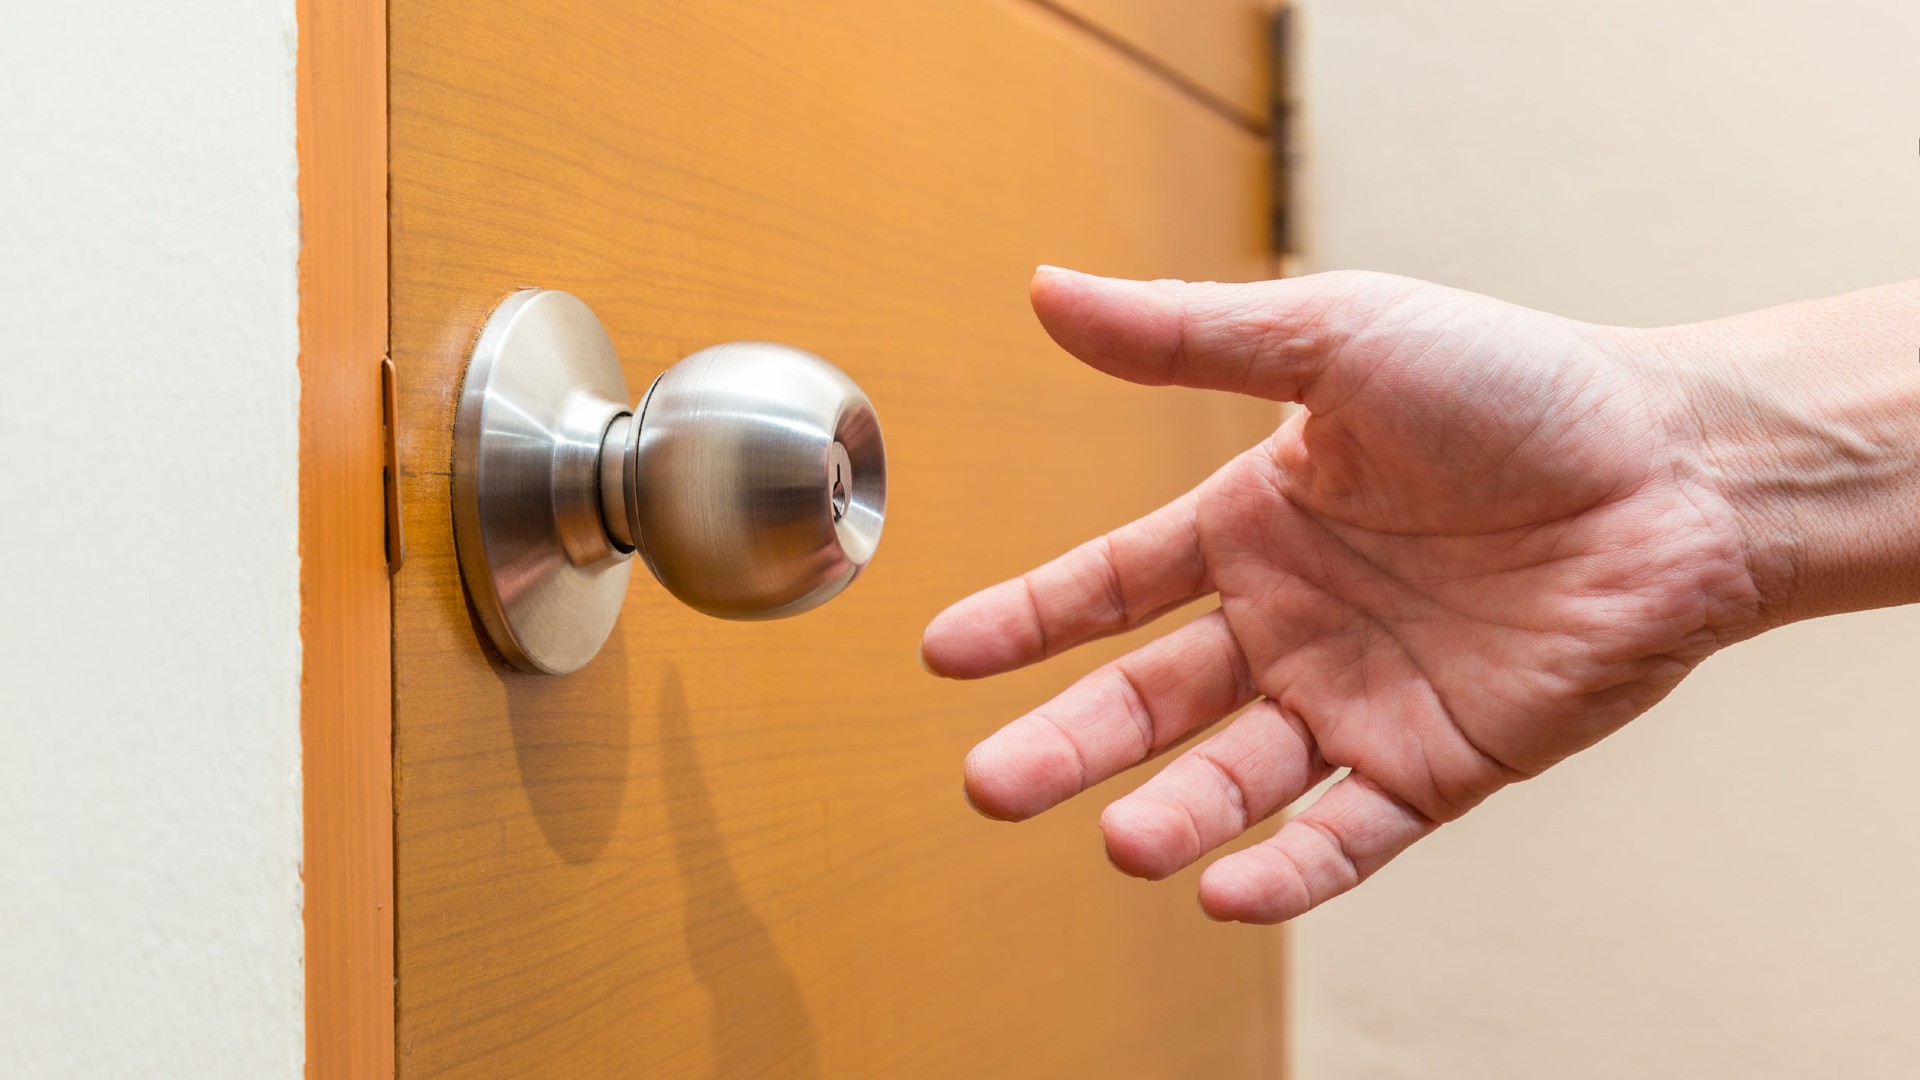 Pre-Pandemic Activities - hand touching door knob